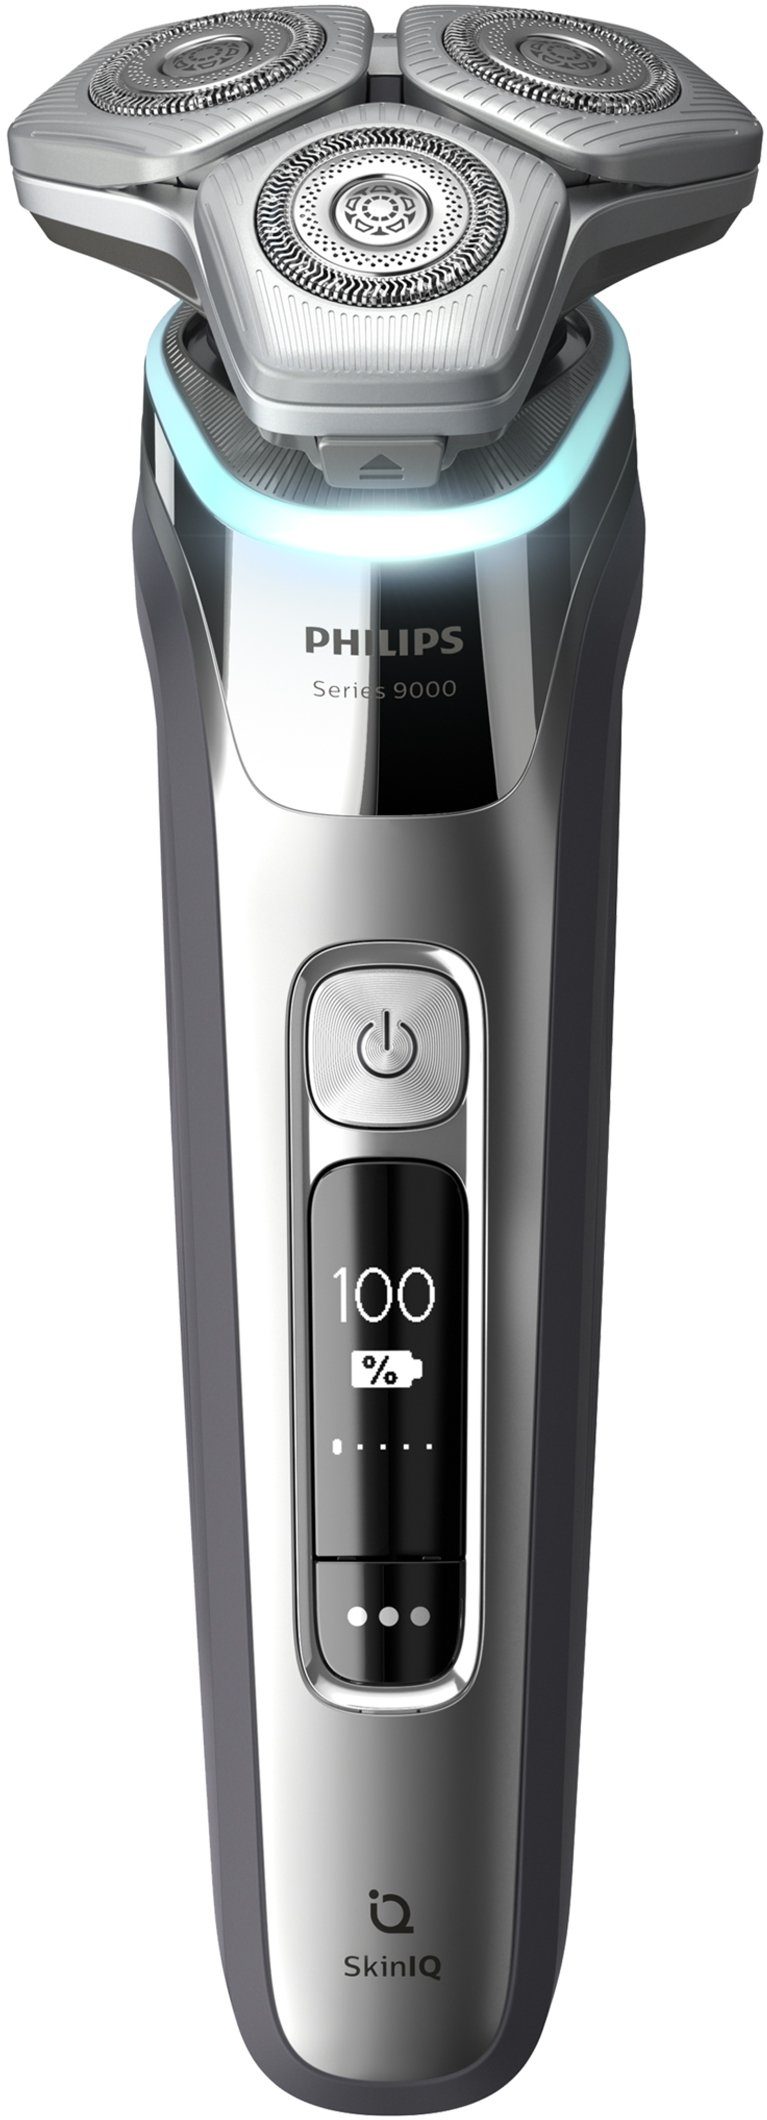 Philips Elektrorasierer Shaver series und Ladestation inkl. Skin Technologie, Etui IQ S9985/35, 9000 mit